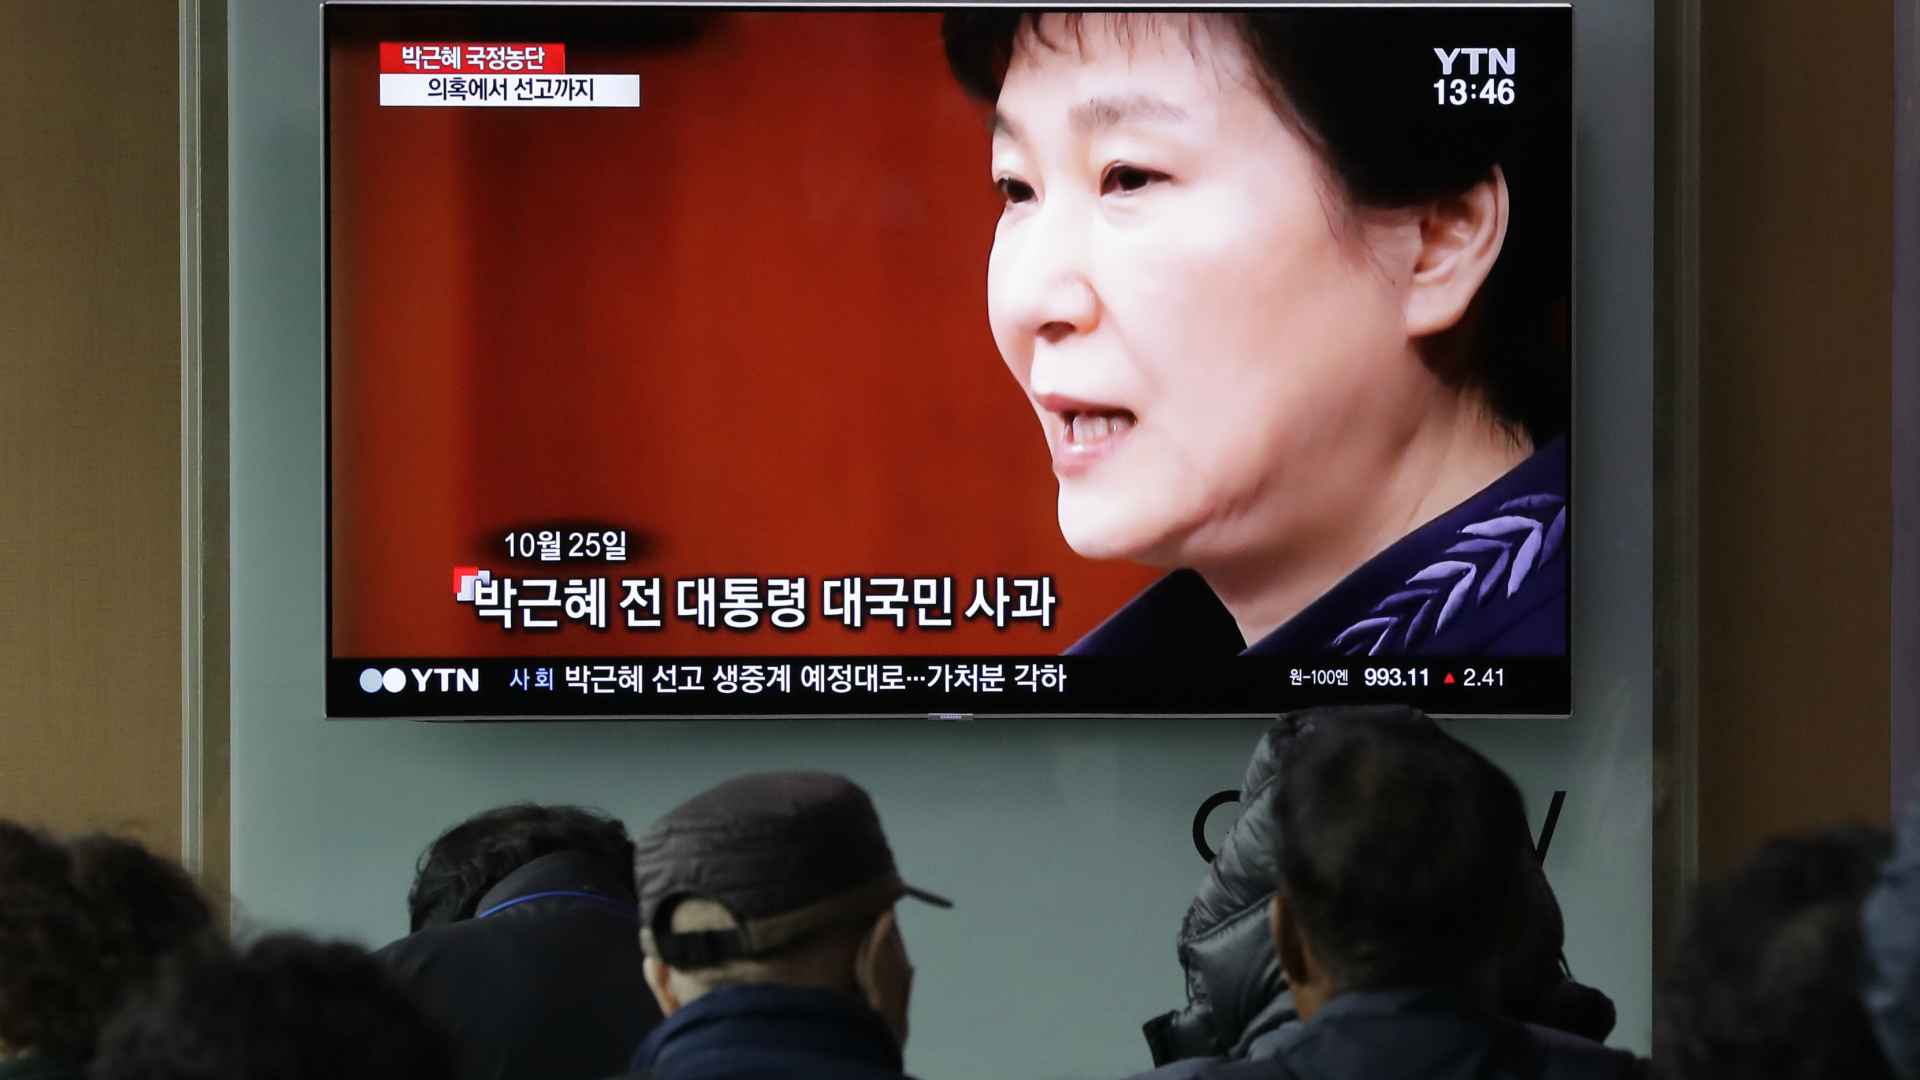 La expresidenta surcoreana Park, condenada a 24 años de cárcel por corrupción